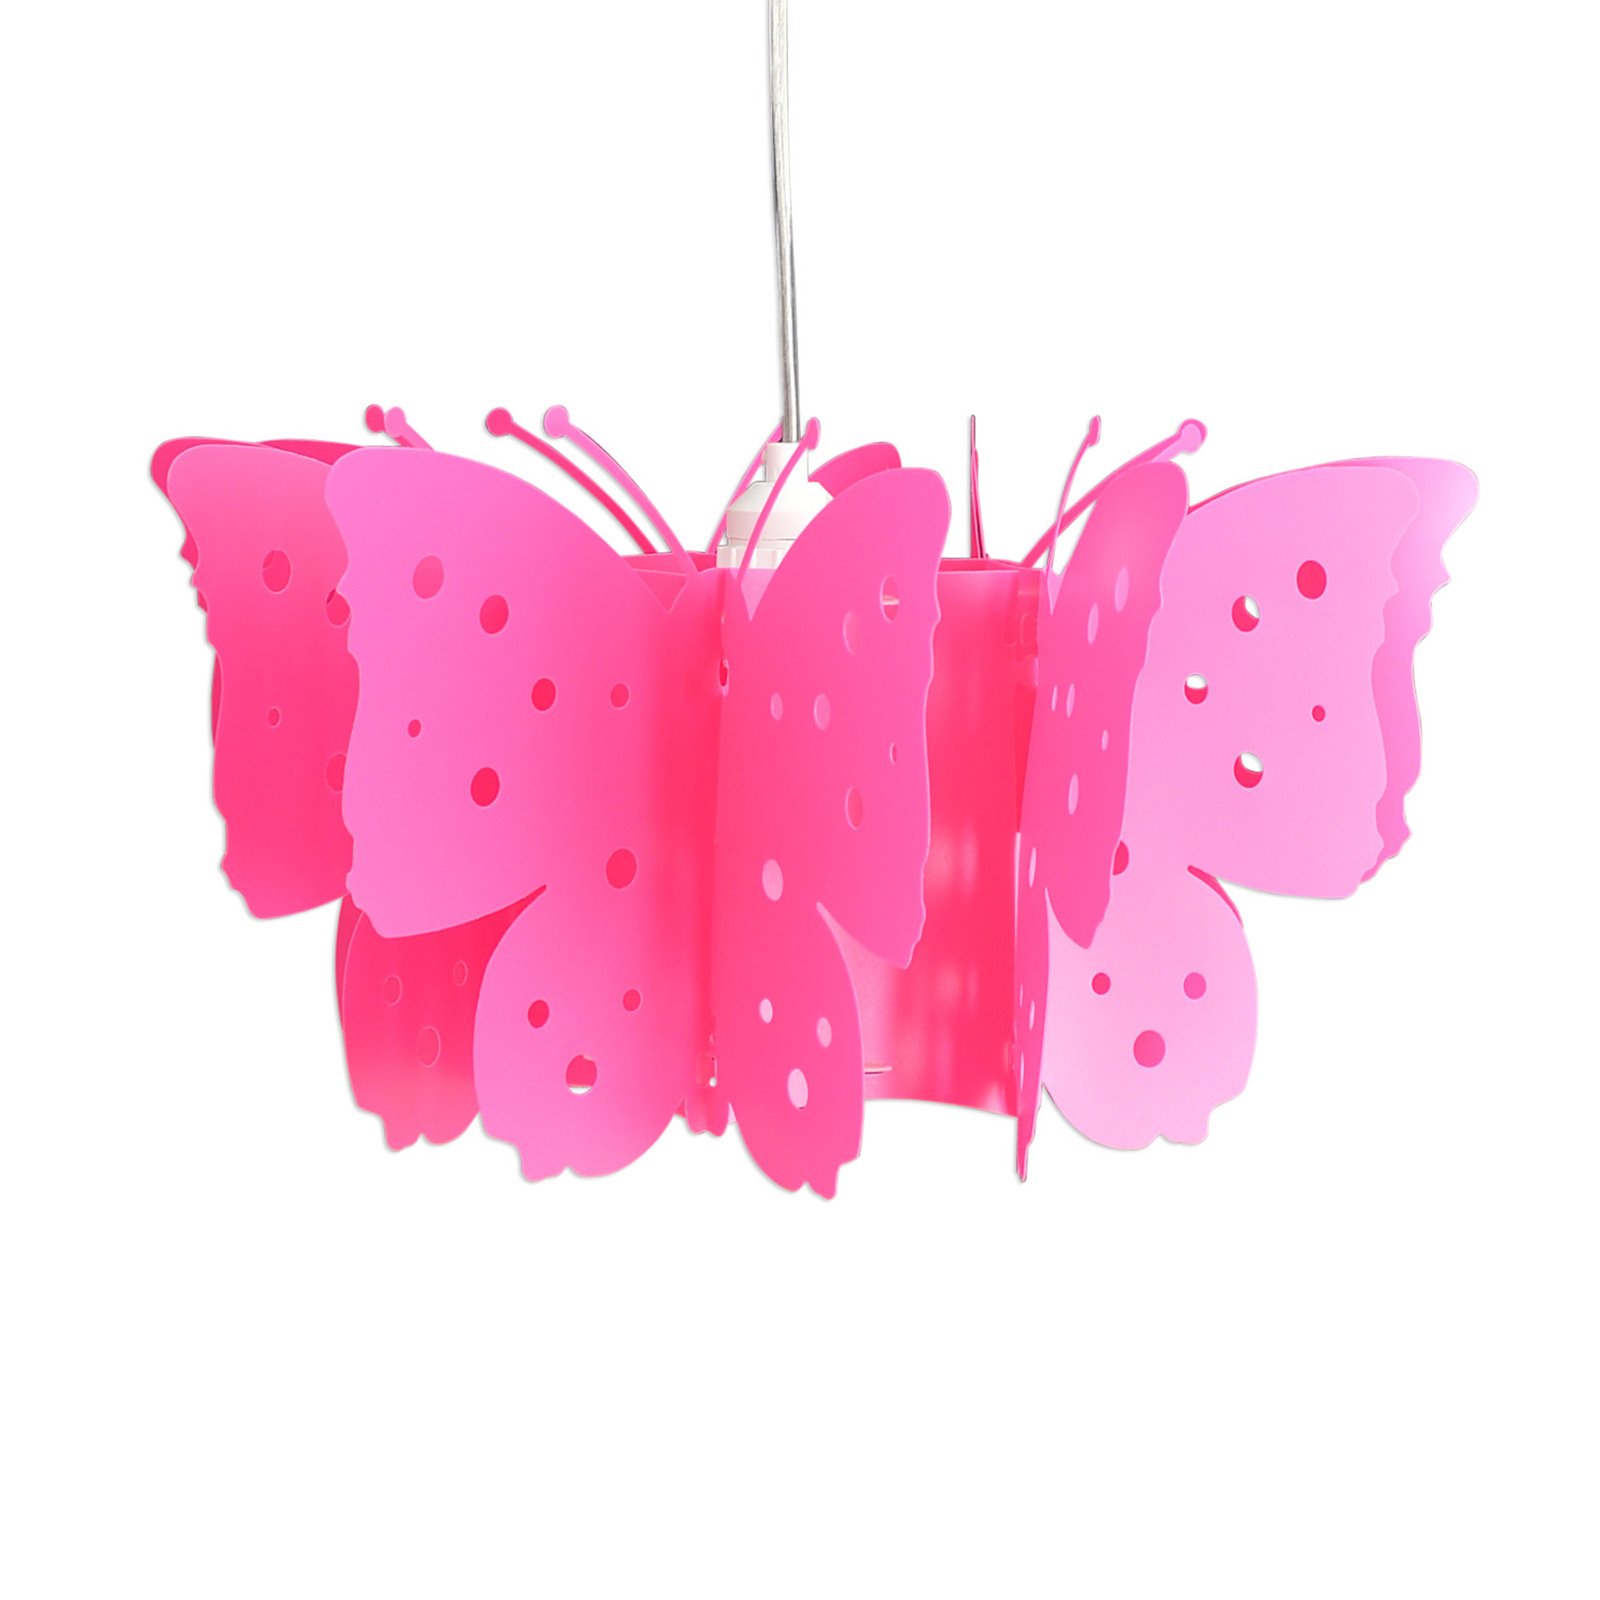 Kizi viseće svjetlo u ružičastoj boji s leptirićima